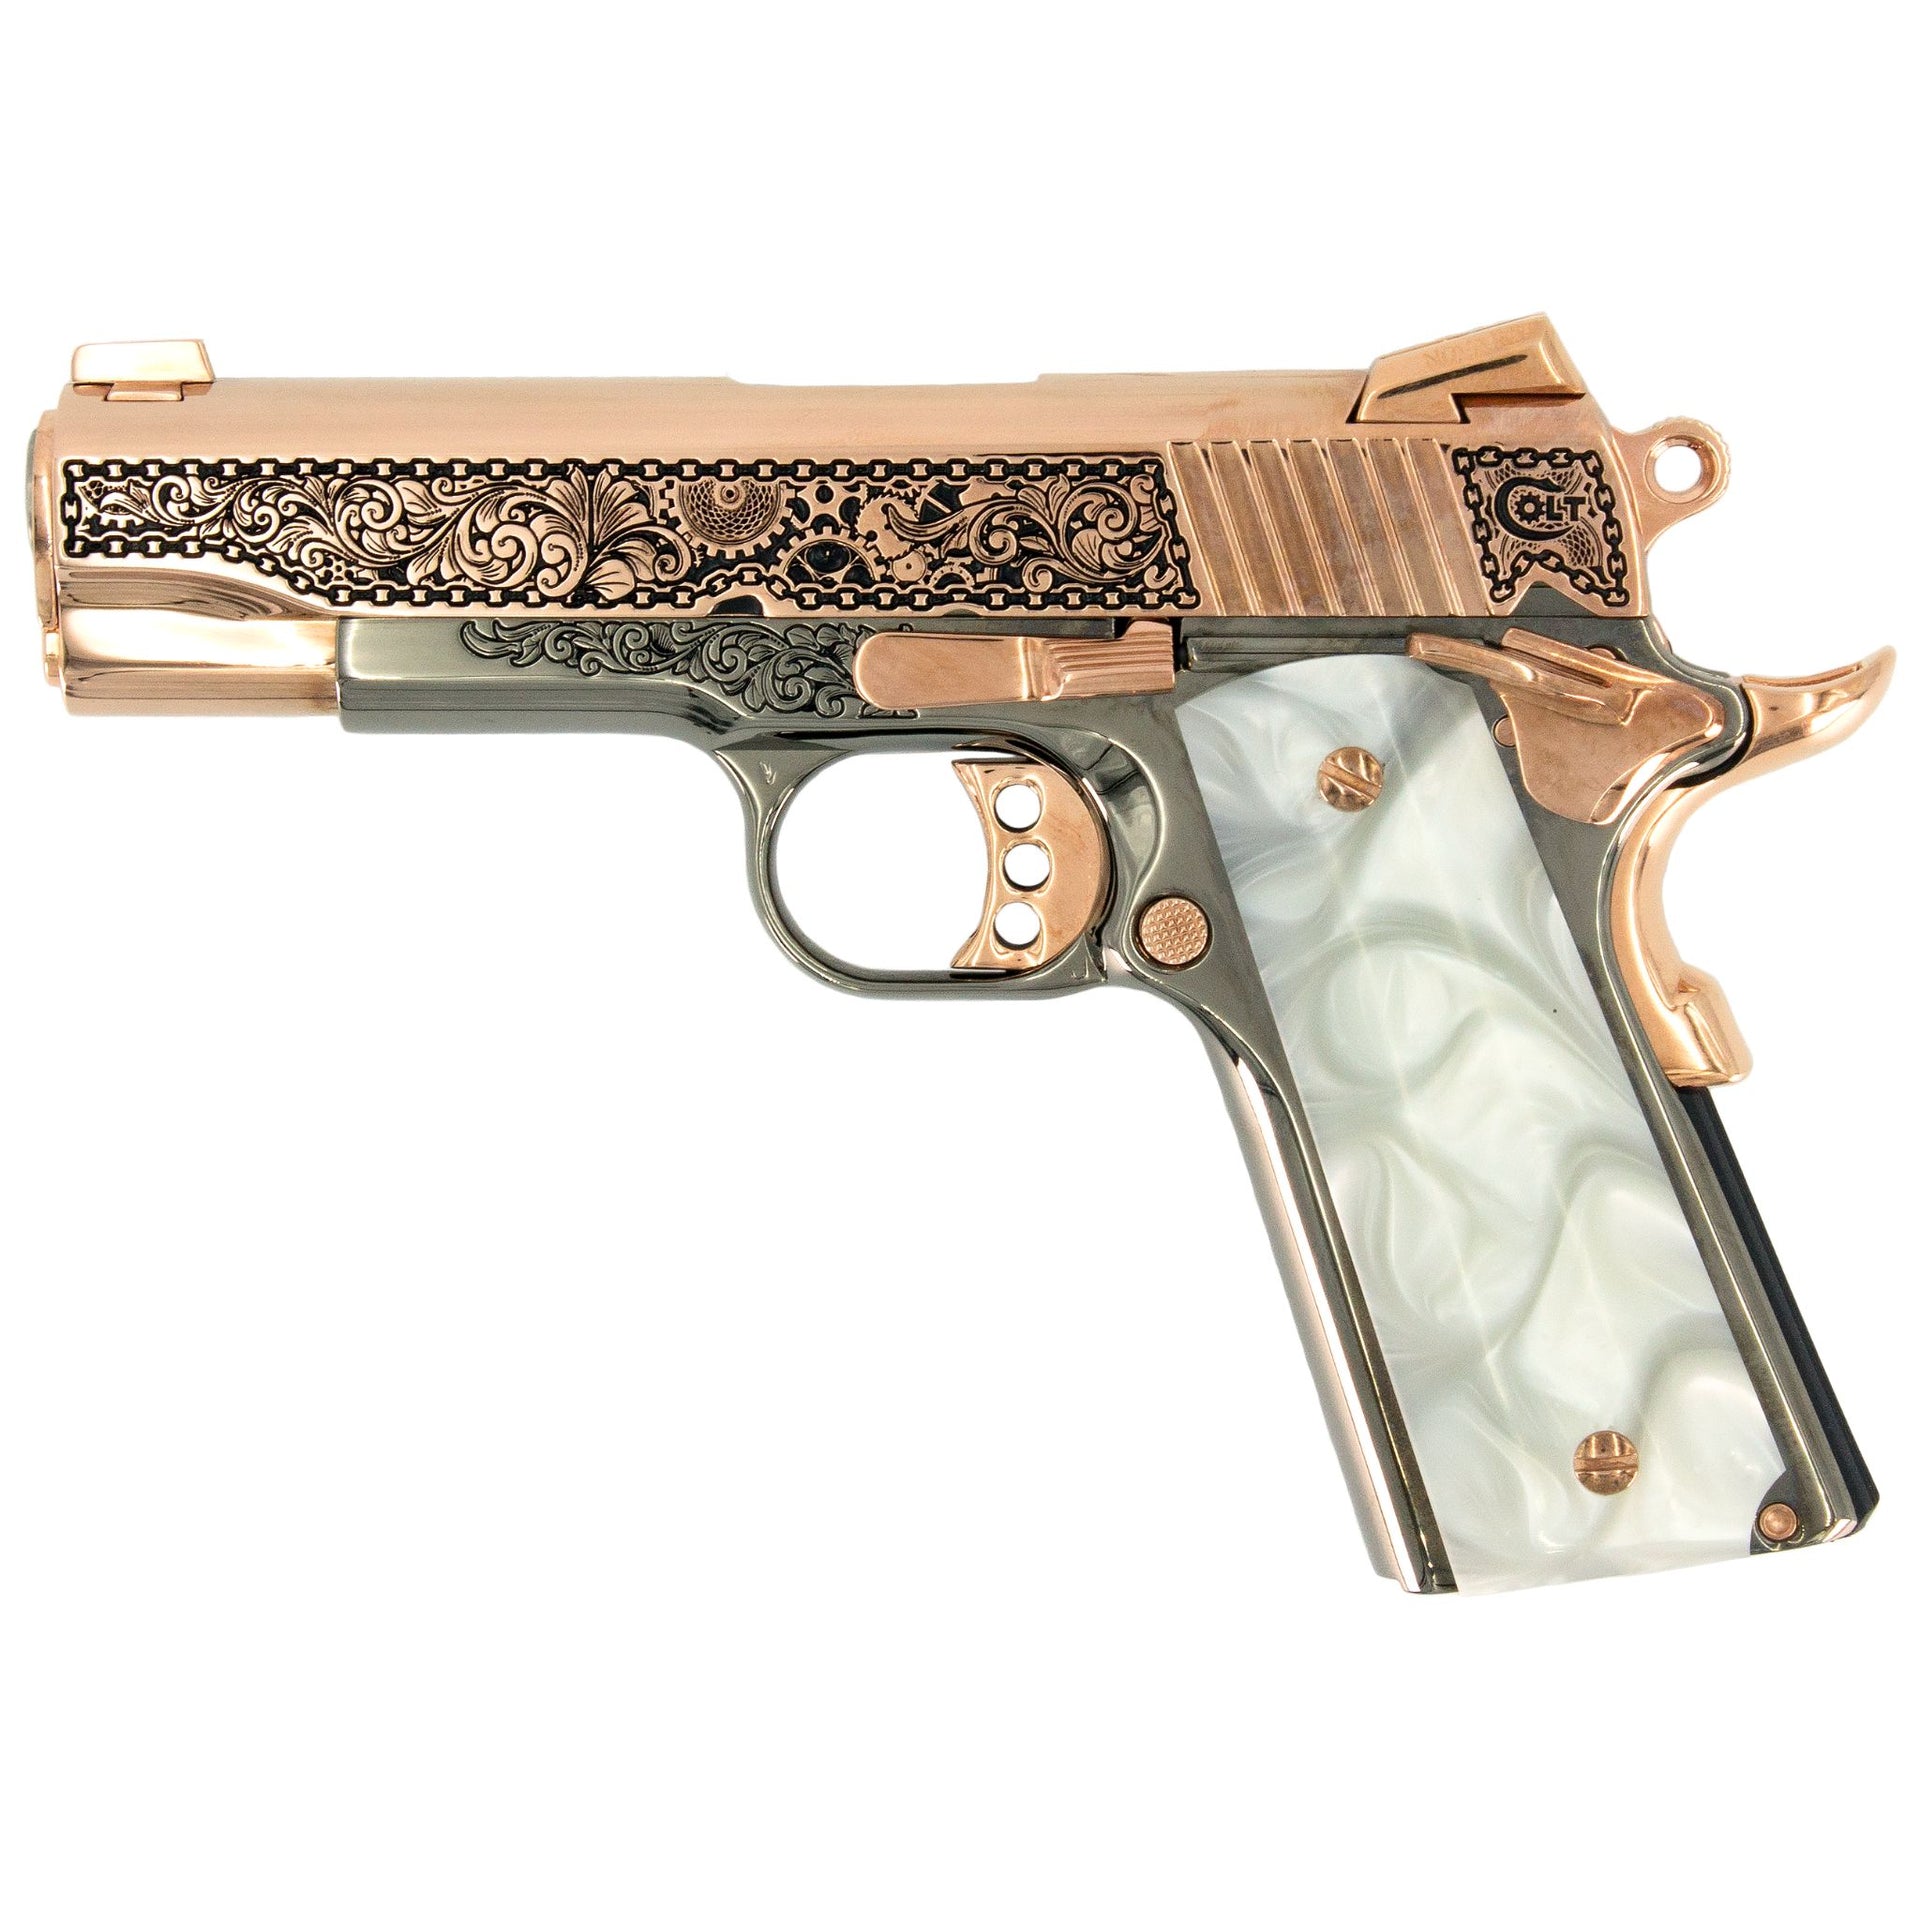 Colt 1911 Combat Commander, 45 ACP,  Engraved In High Polish 18 karat Rose Gold Plated and Black Chrome Clockwork Design, SKU: 7010463121510, Rose Gold Gun, Rose Gold Firearm, Engraved Firearm  